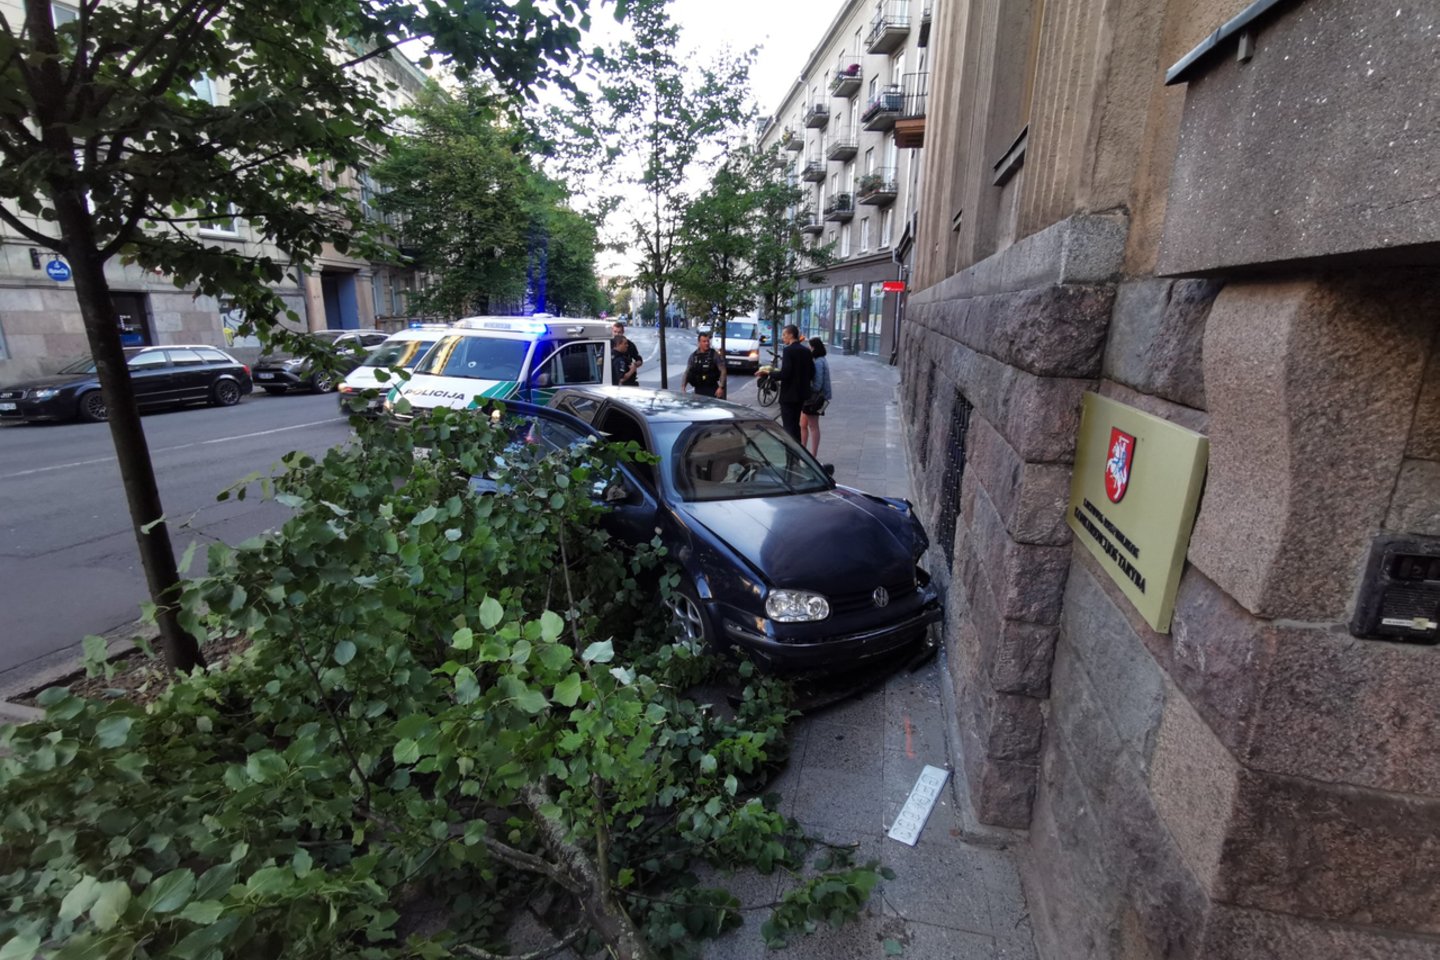  Vilniuje 3 jaunuolių pasivažinėjimas baigėsi avarija: automobilis rėžėsi į sieną.<br> R.Danisevičiaus nuotr.